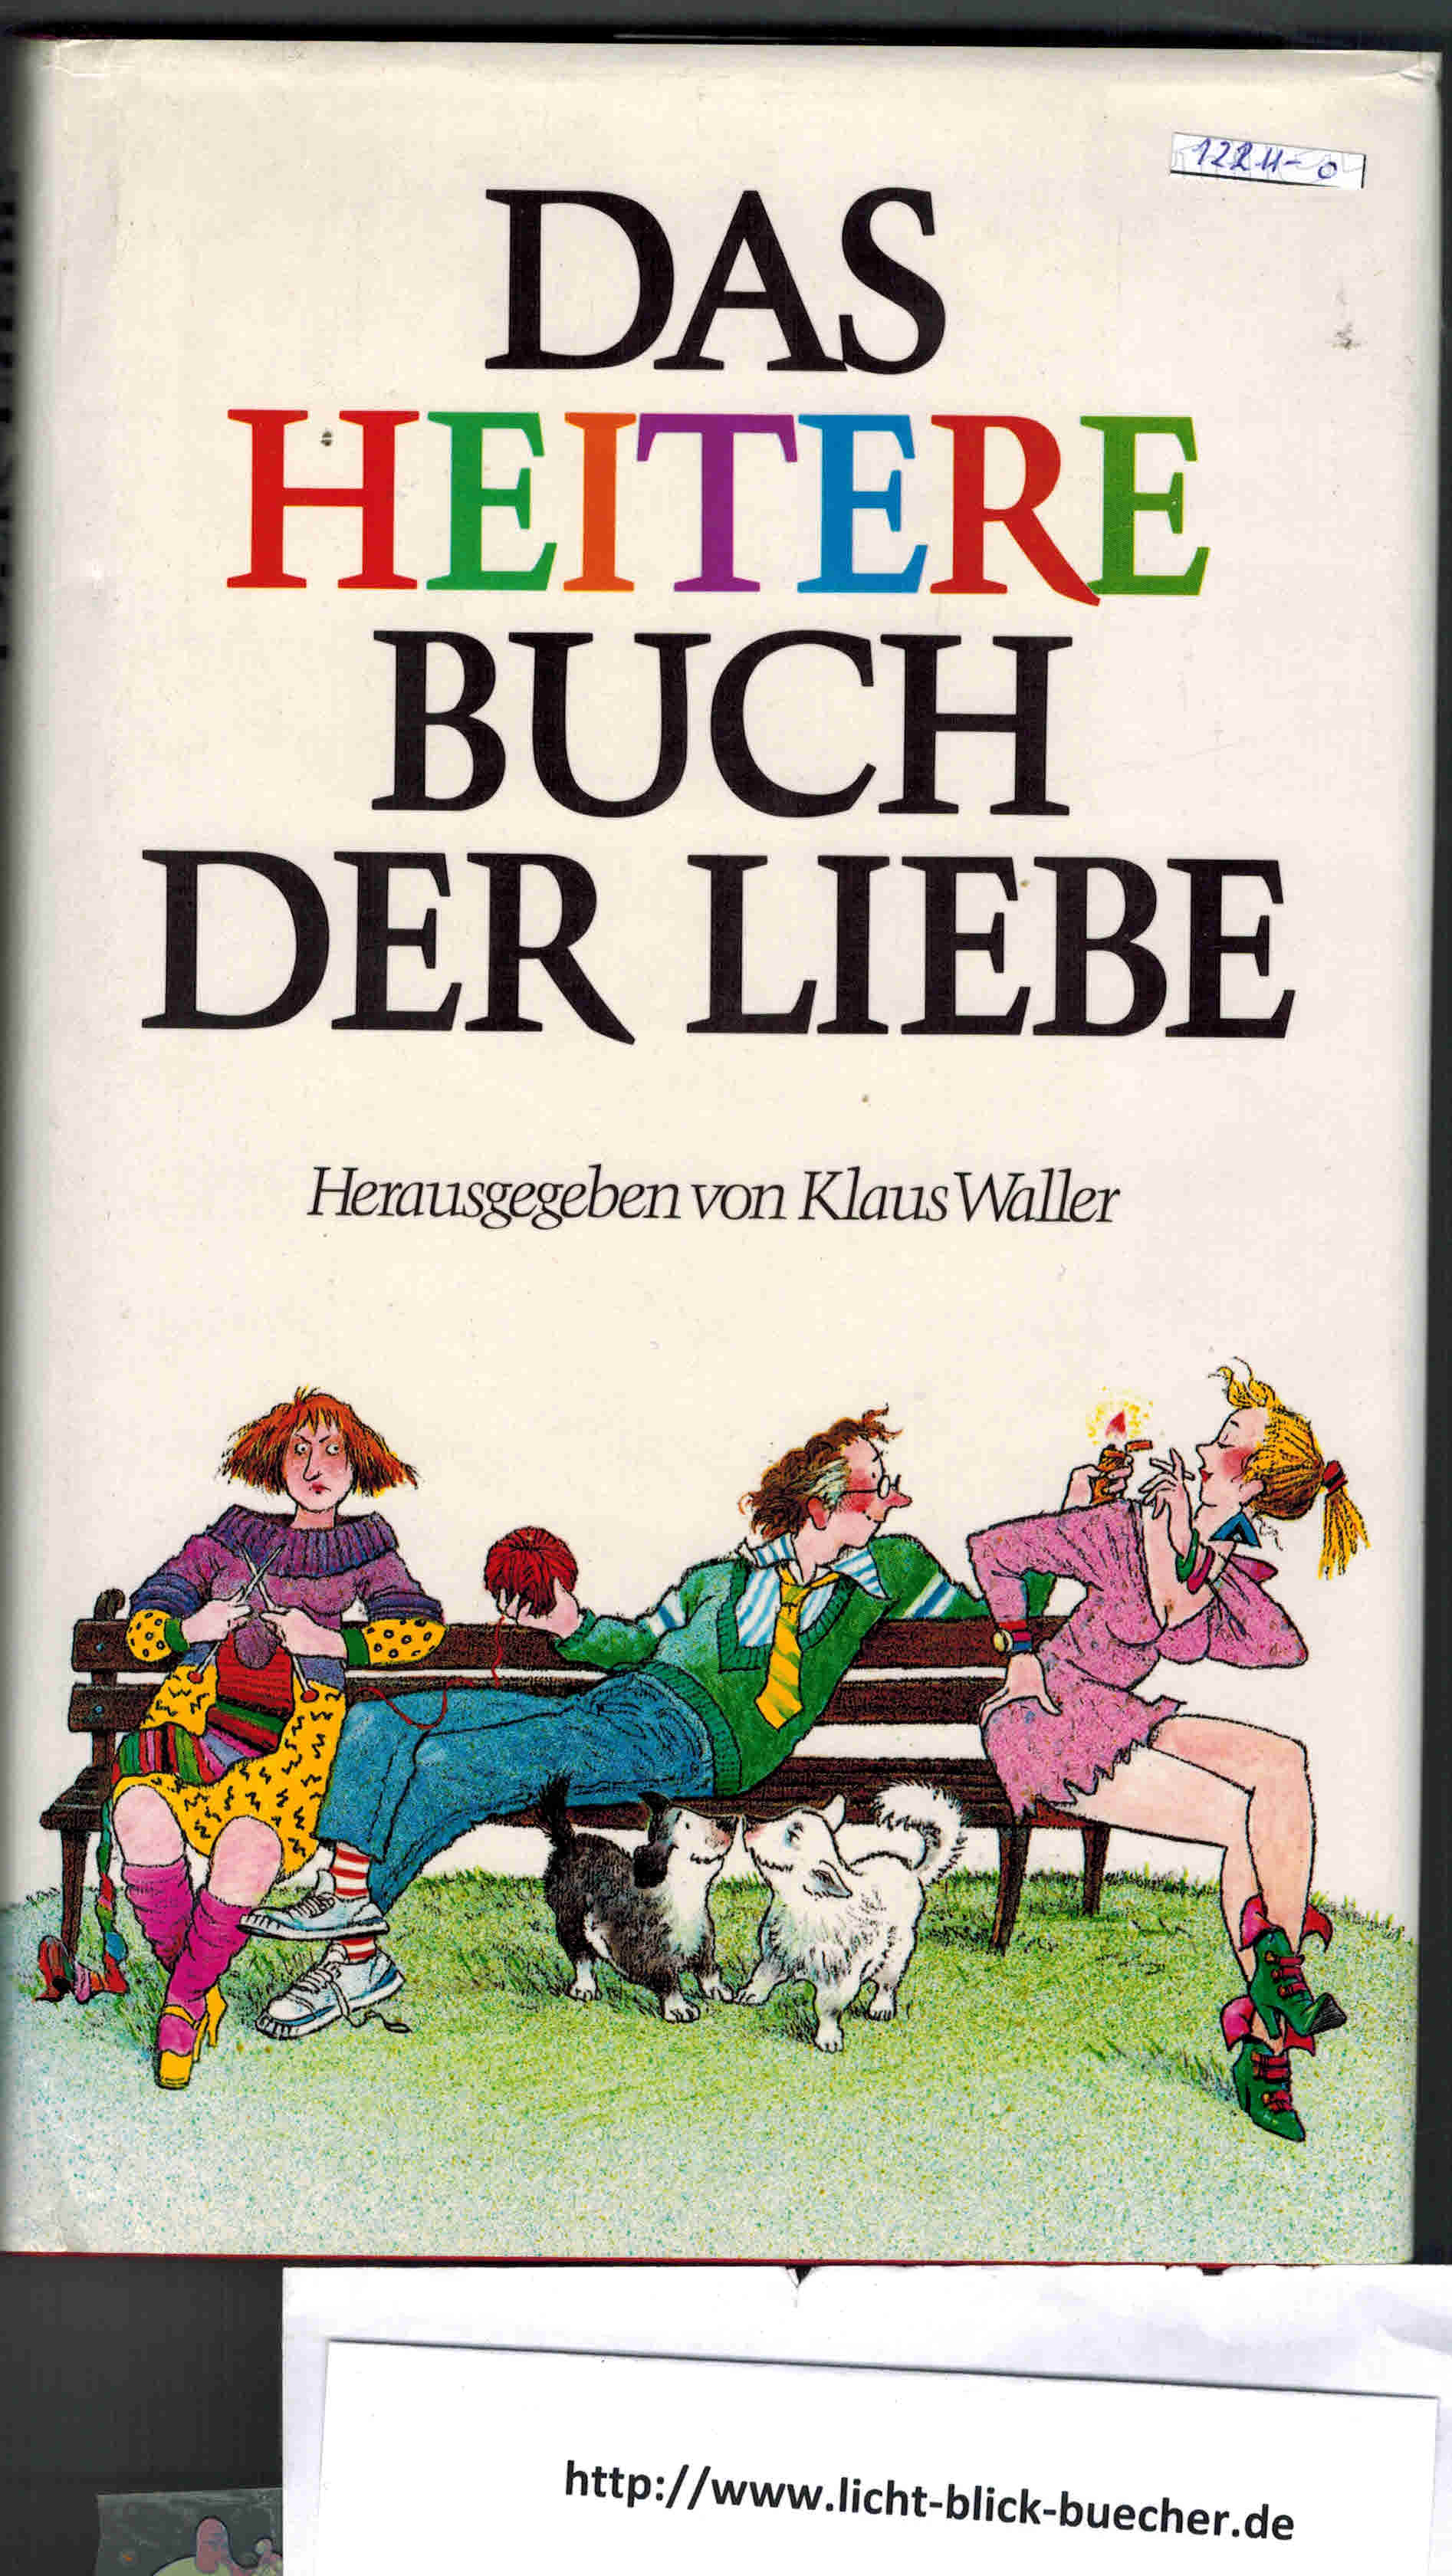 Das heitere Buch der Liebe( hrsg. von Klaus Waller )Boell, Brecht, Busch, Goethe, Kaestner, Lenz, Mann,Thoma, Tucholsky...